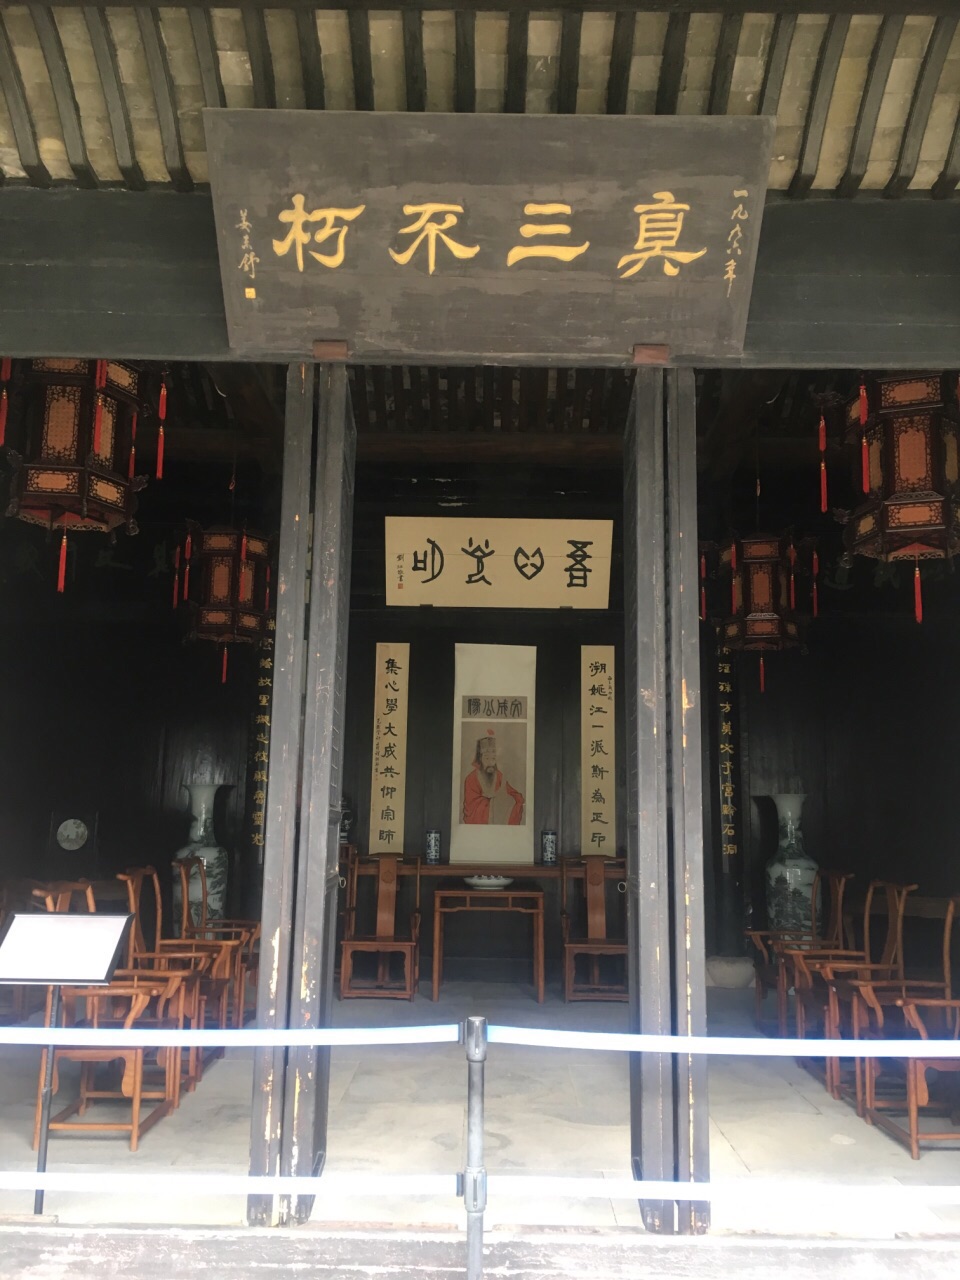 在慈溪游玩的时候偶尔搜索到余姚市区的这个王阳明故居纪念馆.